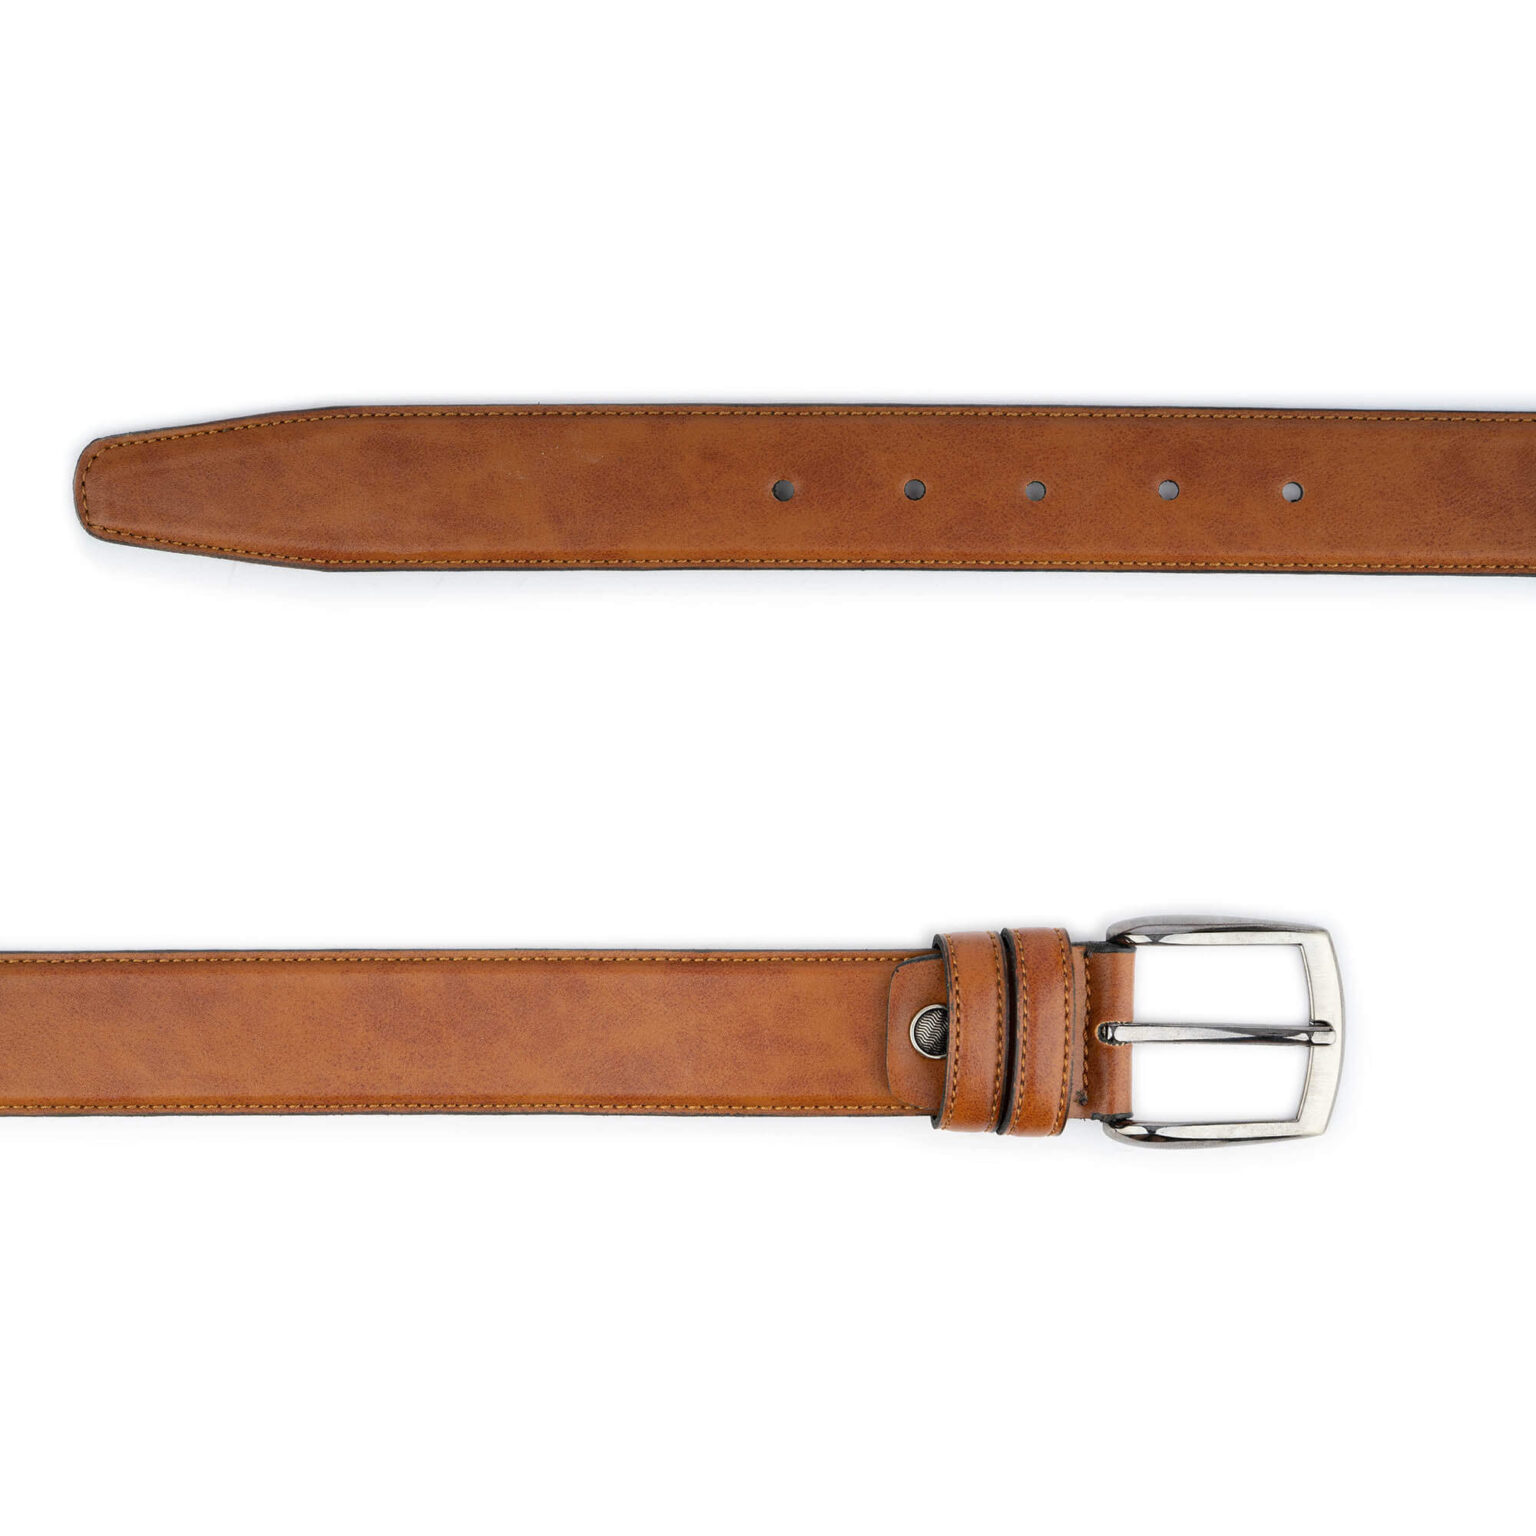 Buy Mens Light Brown Leather Belt For Suit - LeatherBeltsOnline.com